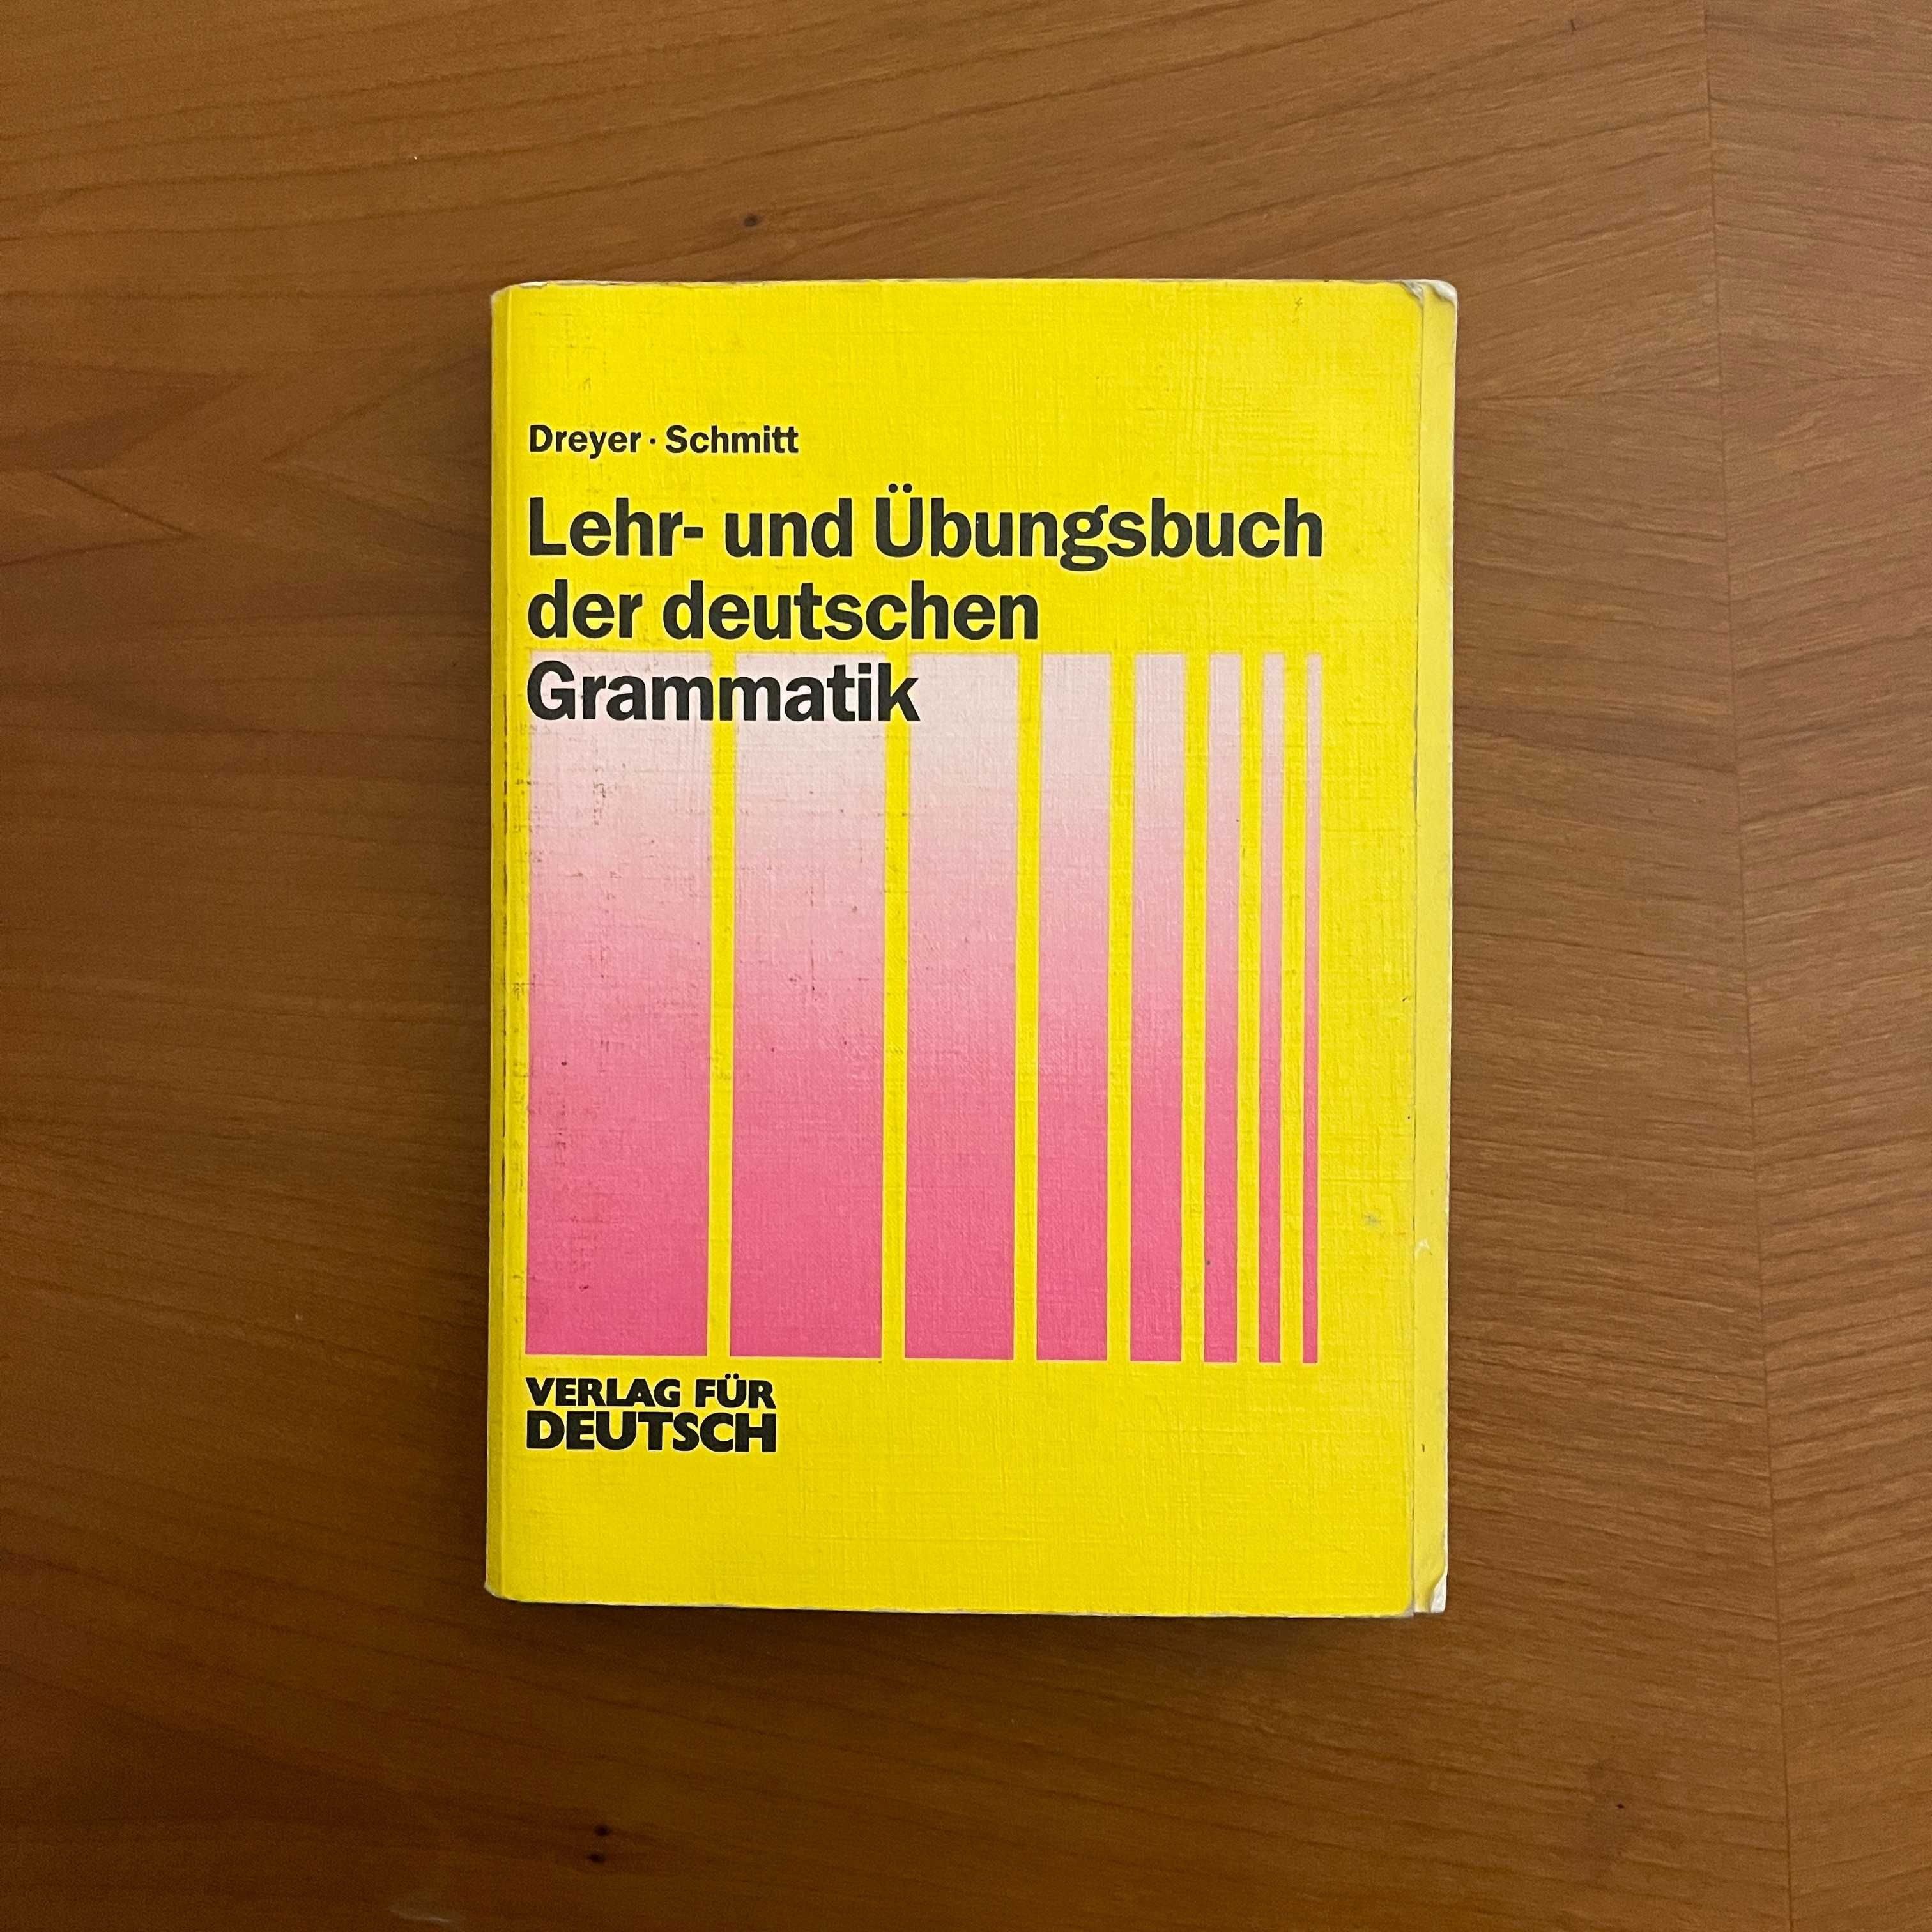 Dreyer / Schmitt - Lehr- und Übungsbuch der deutschen Grammatik